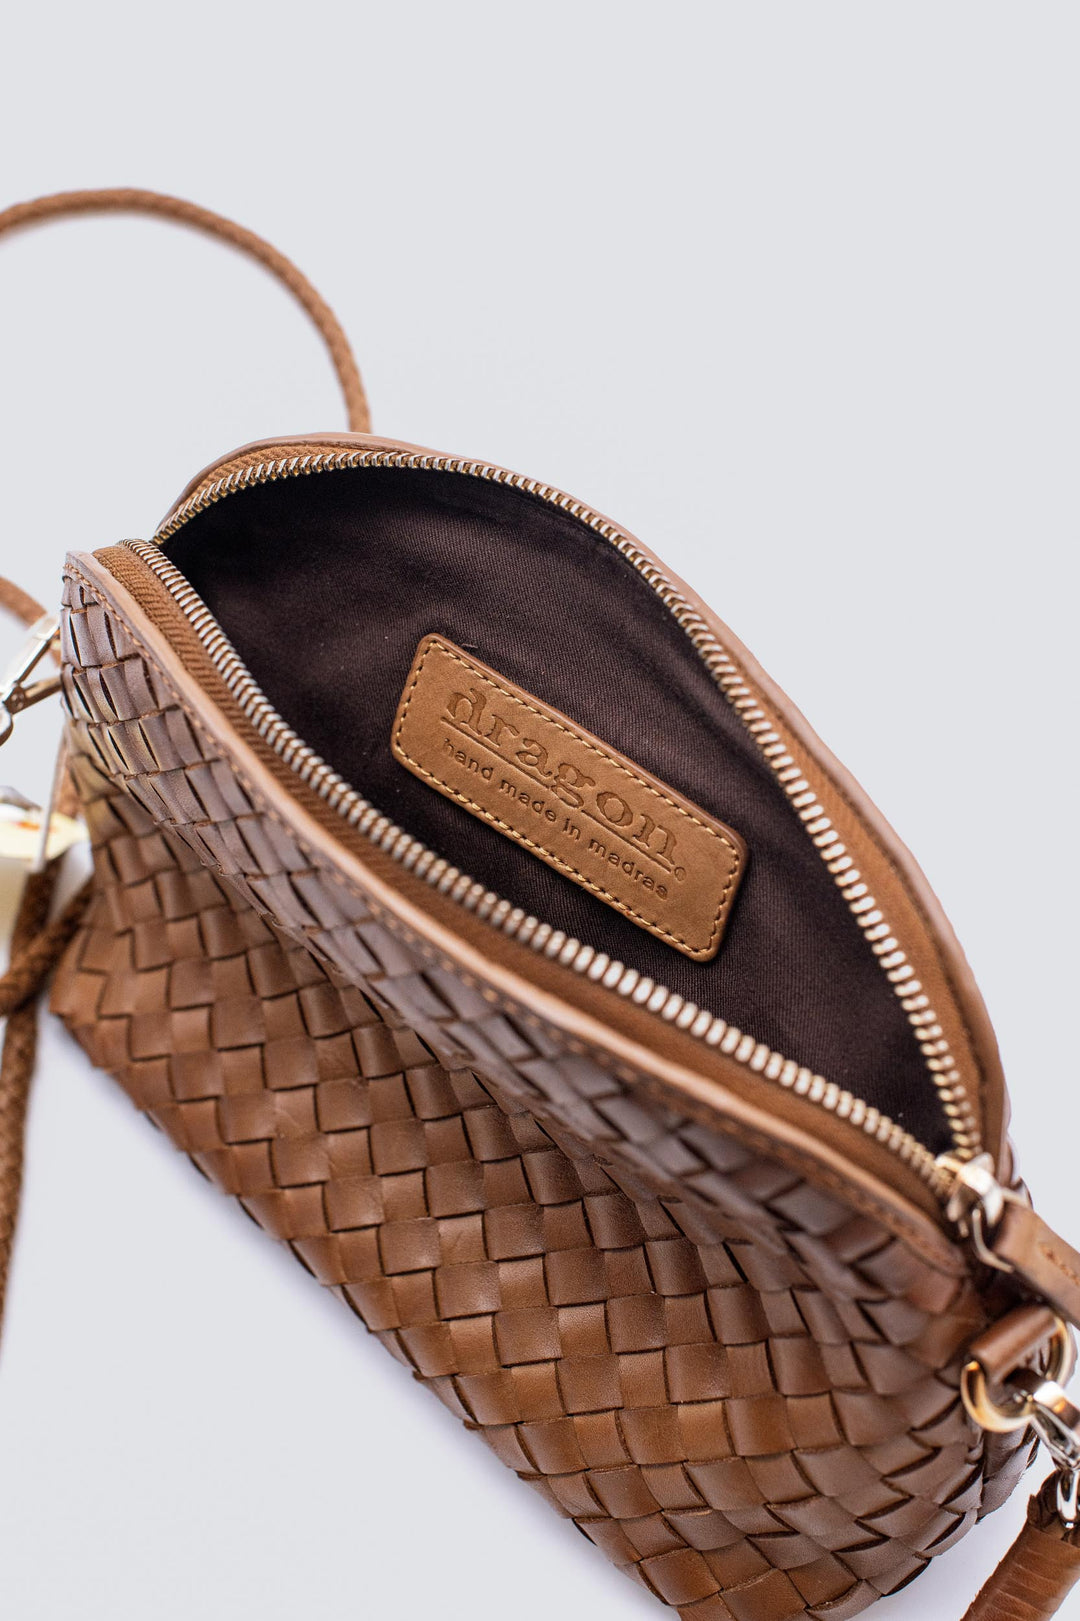 Dragon Diffusion woven leather bag handmade - Fellini Pochette Tan